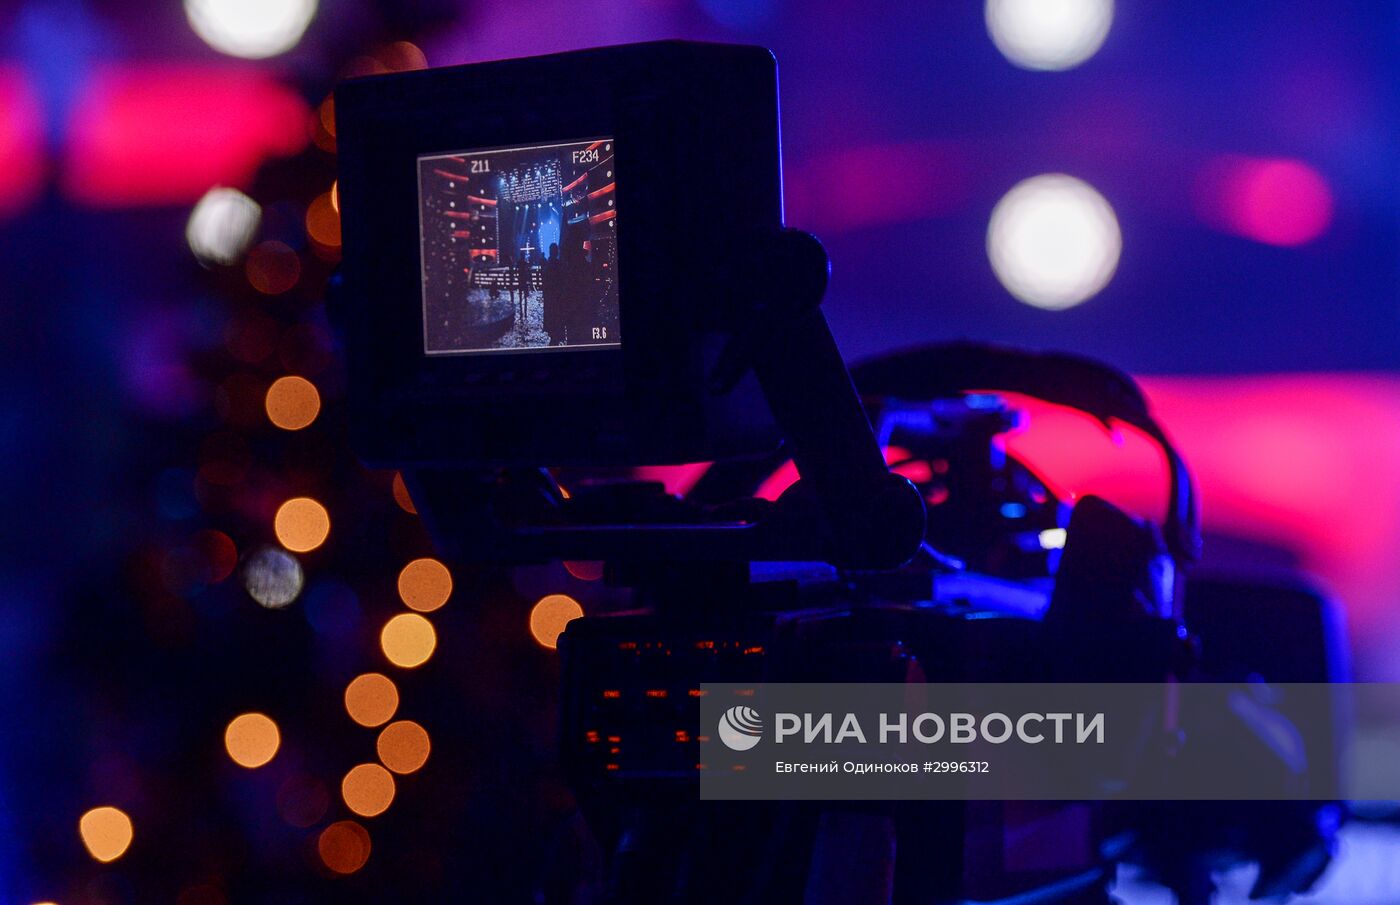 Съемки новогодней программы на Первом канале